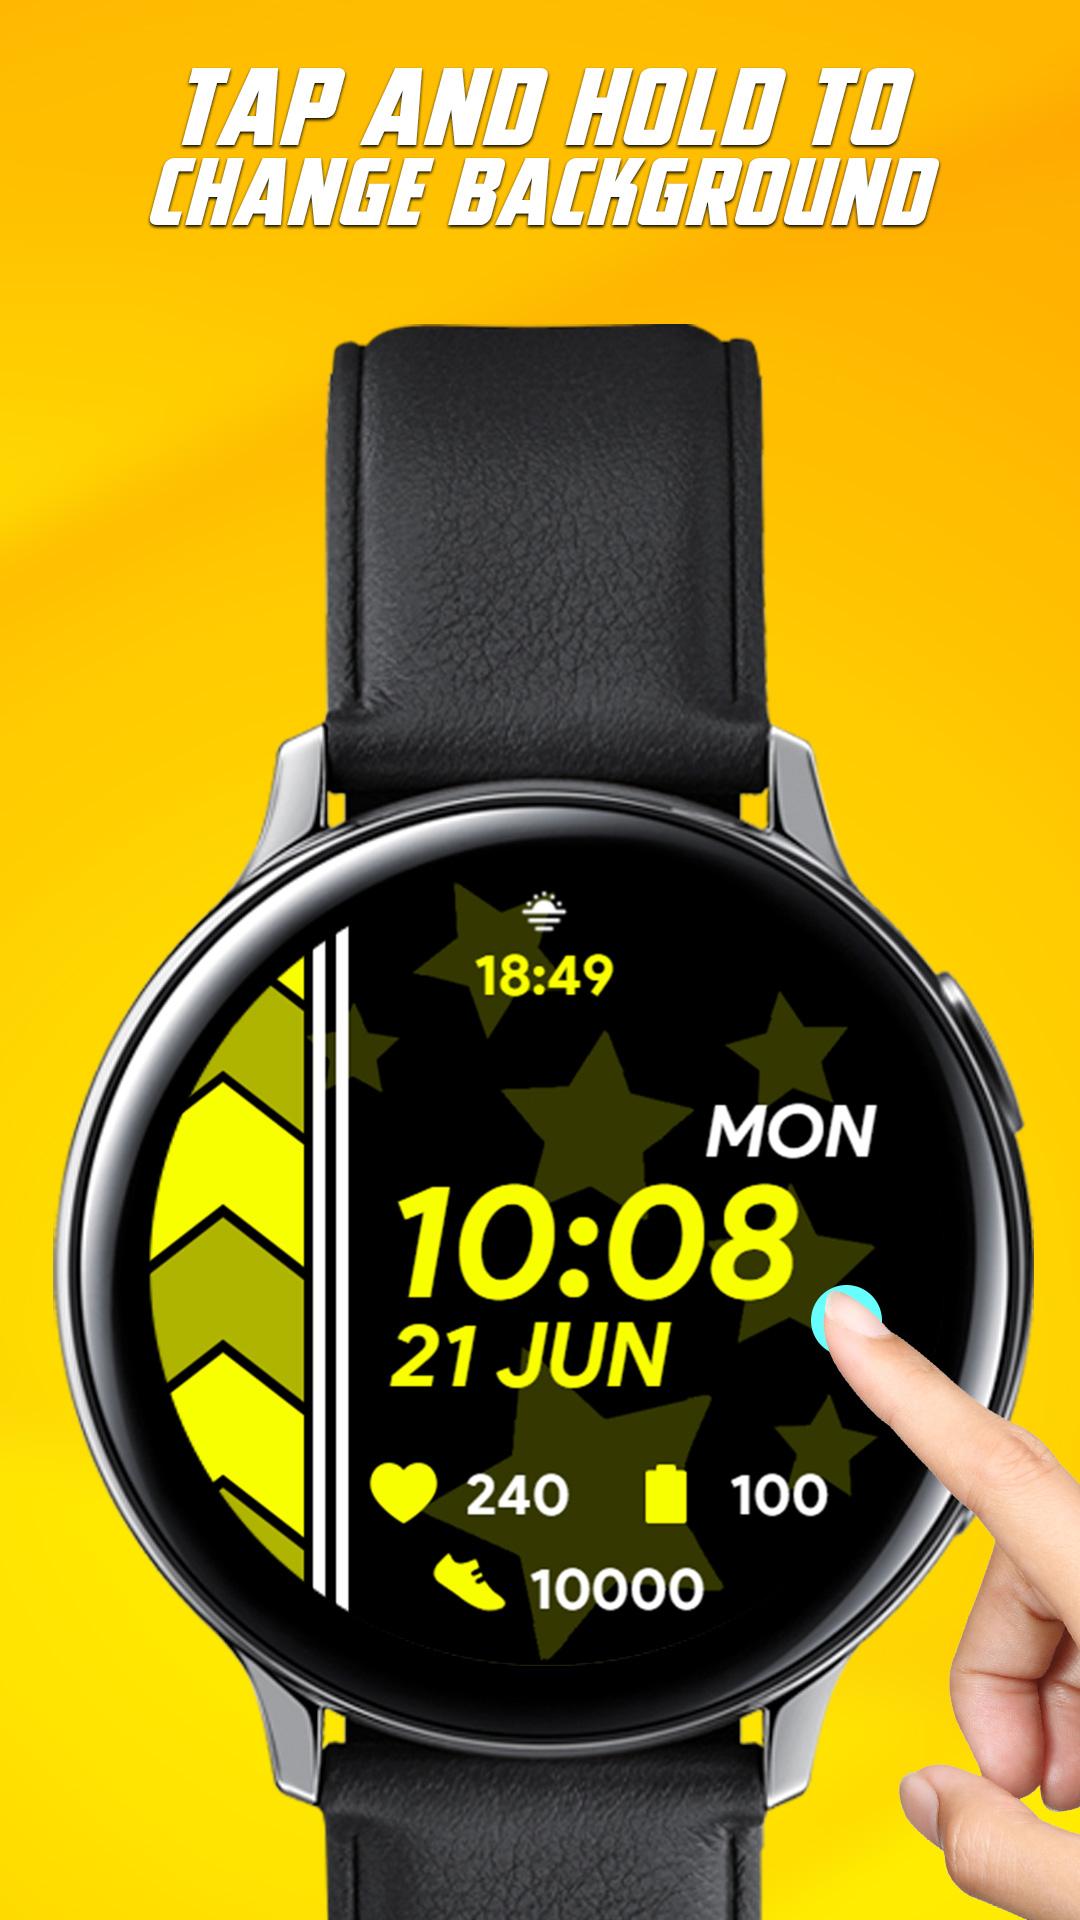 Khám phá DW Arrow Watch APK, một ứng dụng chưa từng có mang đến cho bạn lịch sự, chính xác và đếm ngược phiên bản độc quyền của Daniel Wellington. Với DW Arrow Watch APK, bạn sẽ có trải nghiệm đồng hồ cổ điển độc đáo trên điện thoại của mình.